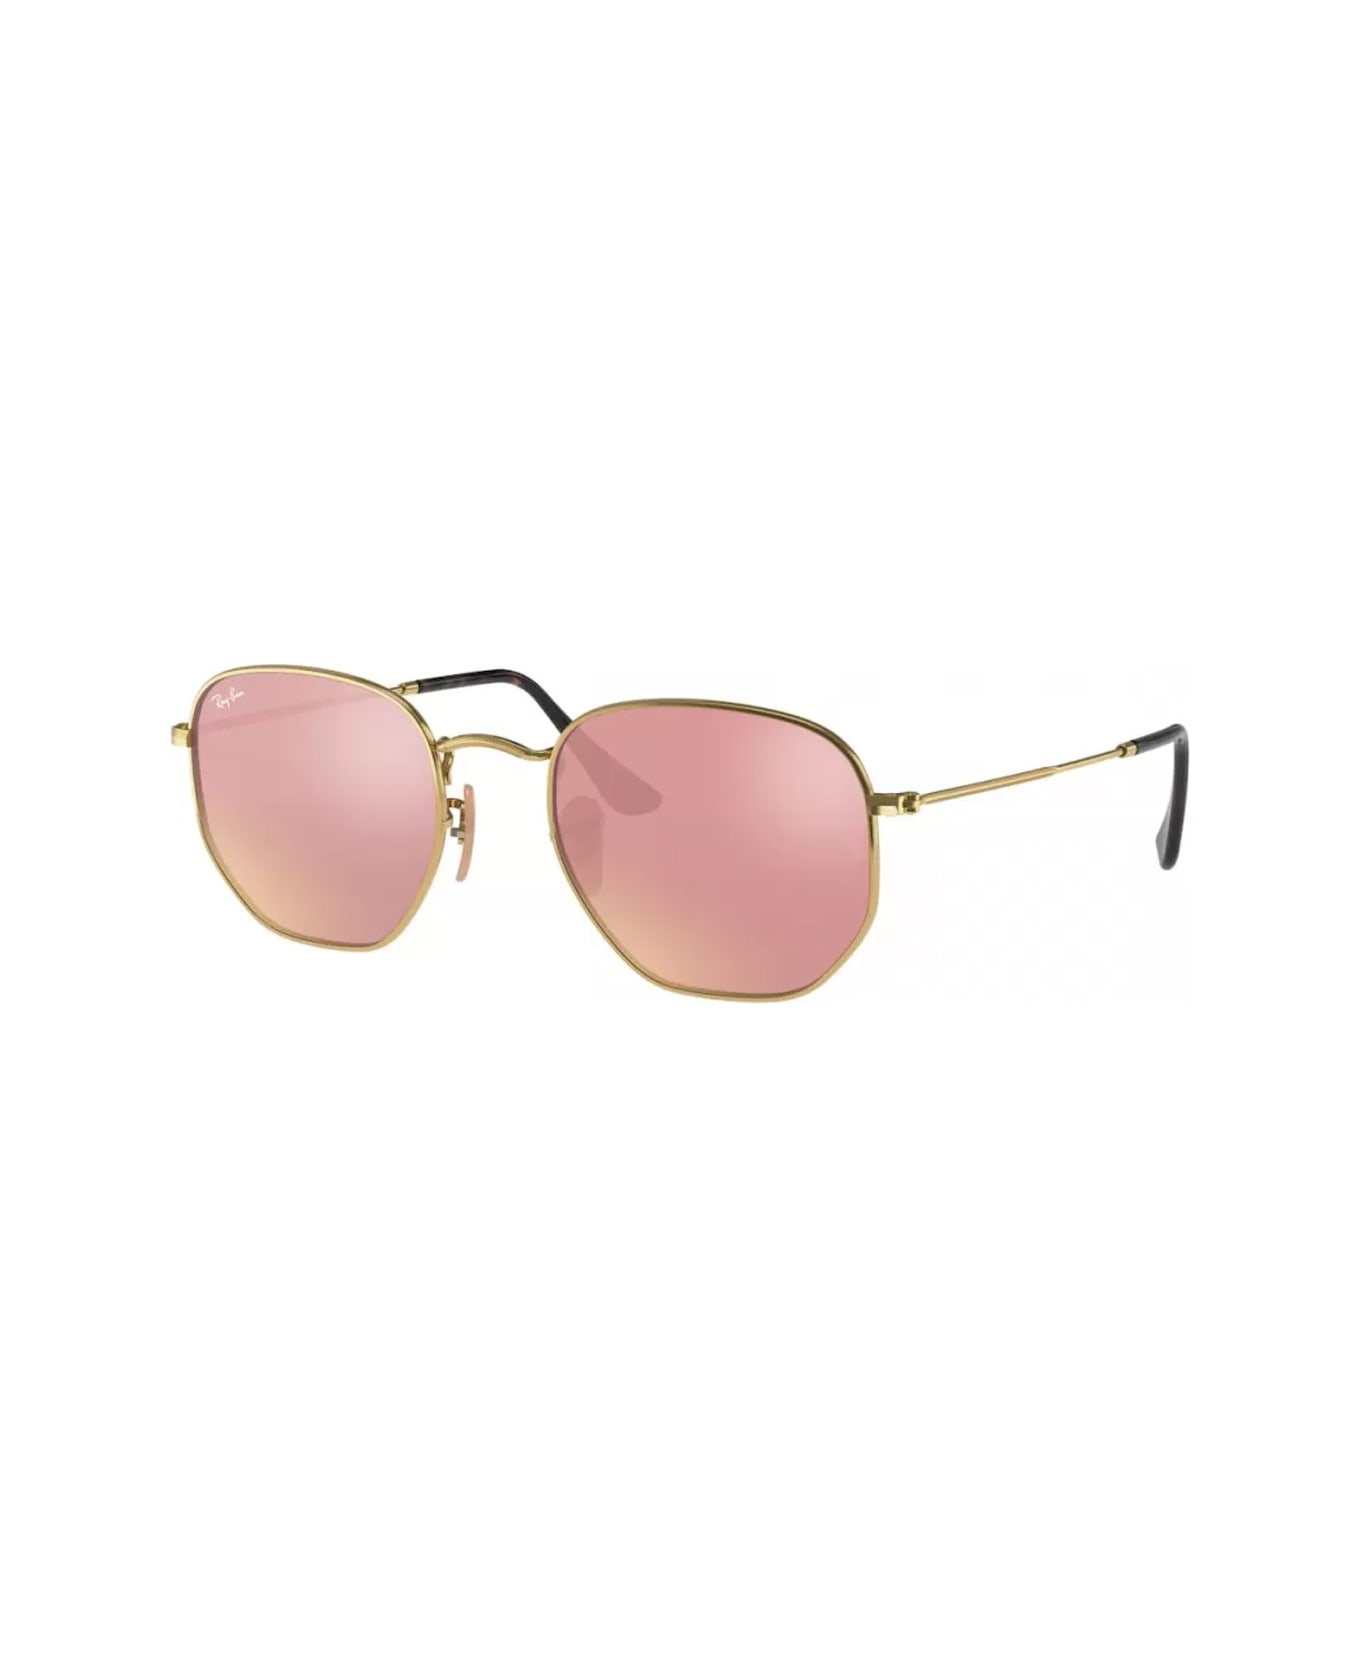 Ray-Ban Rb3548 Sunglasses - Oro サングラス